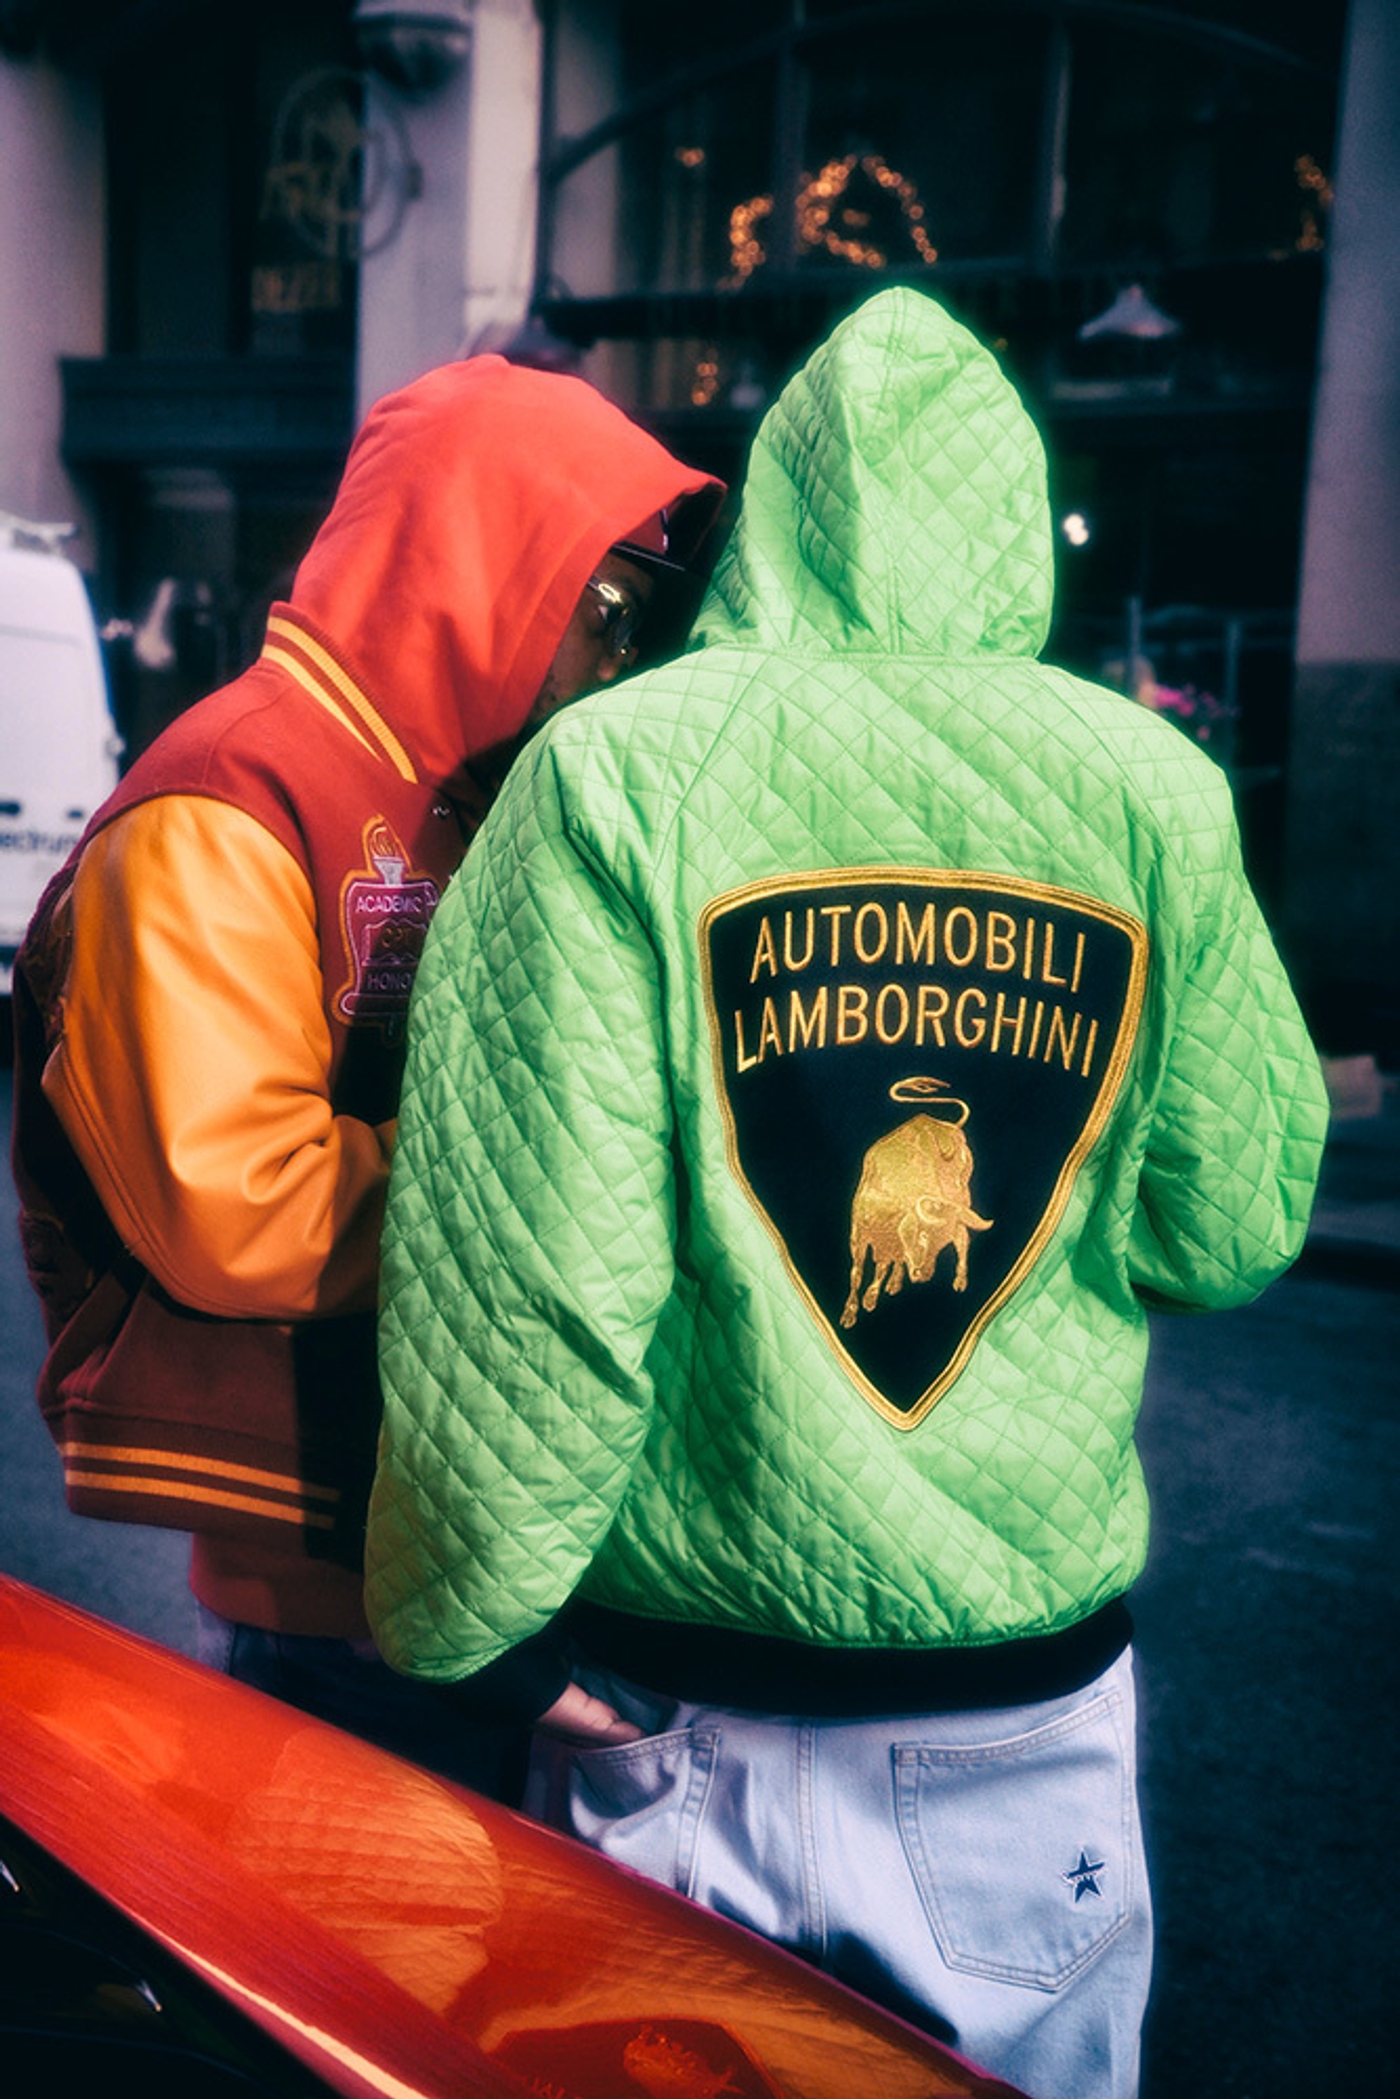 Supreme®/Automobili Lamborghini (2) (2/26)